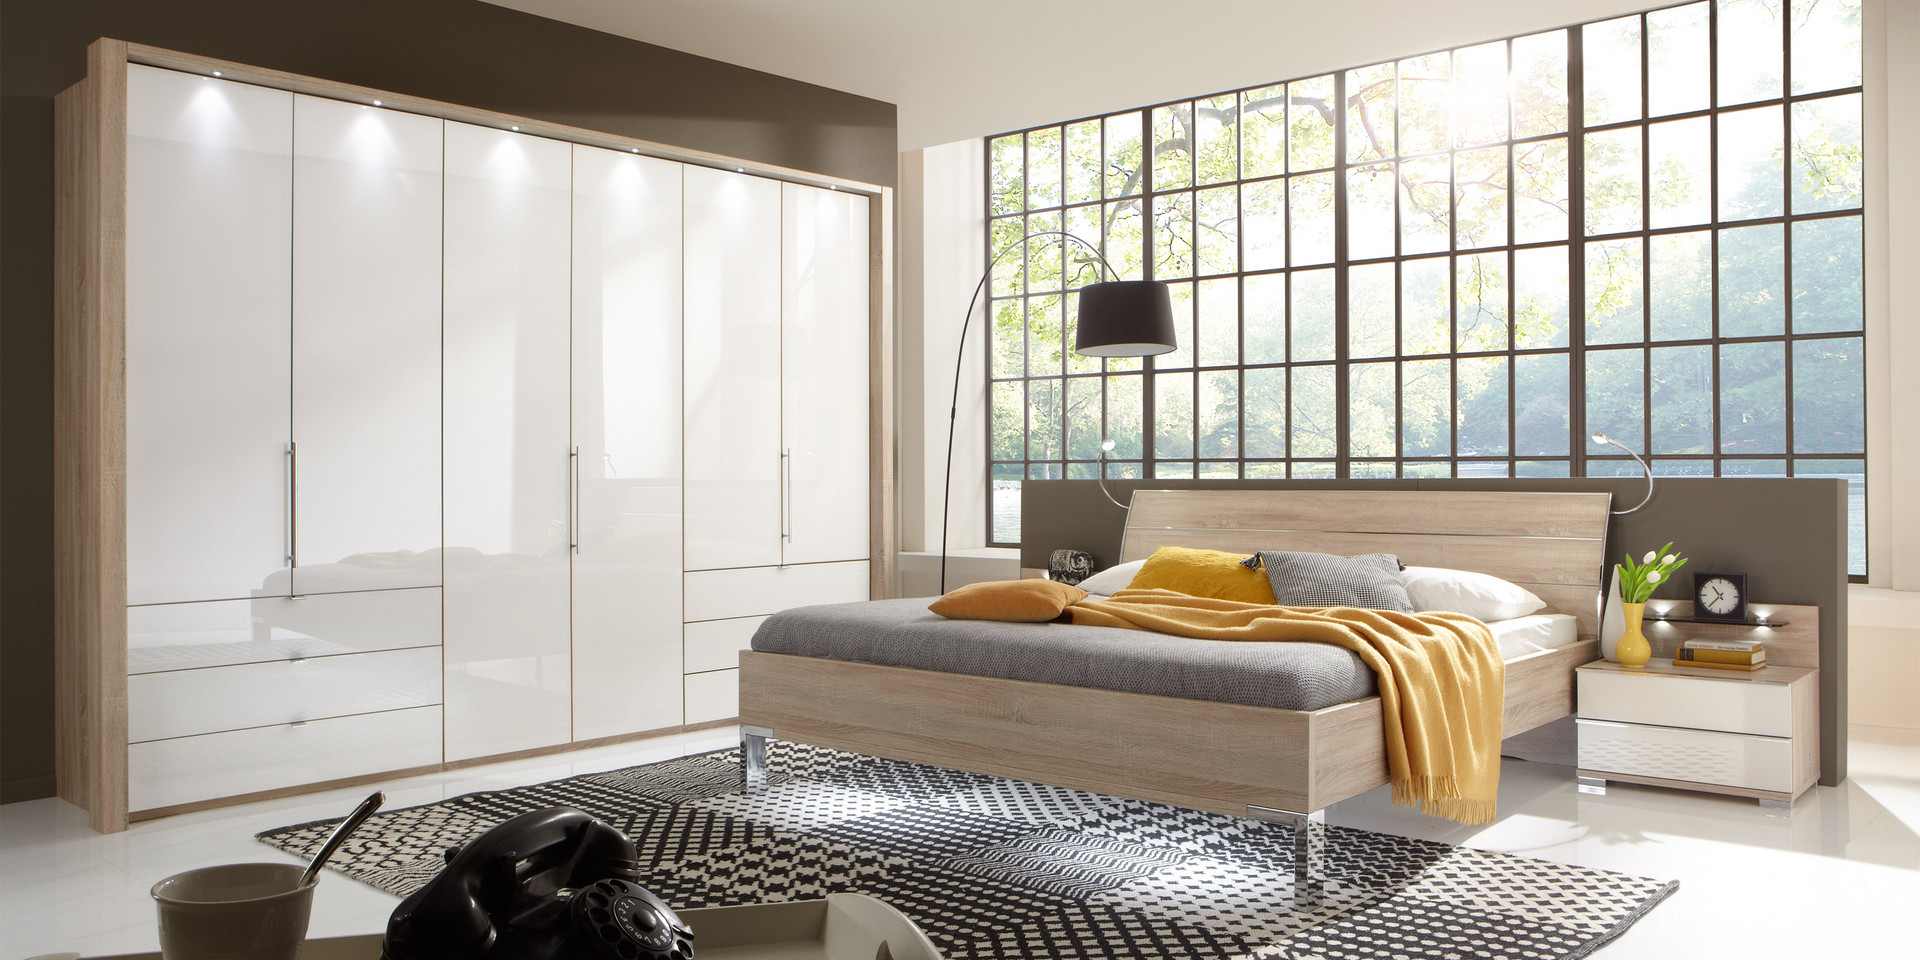 Schlafzimmer modern Schranksystem modern Loft Eiche sägerau Glas weiß